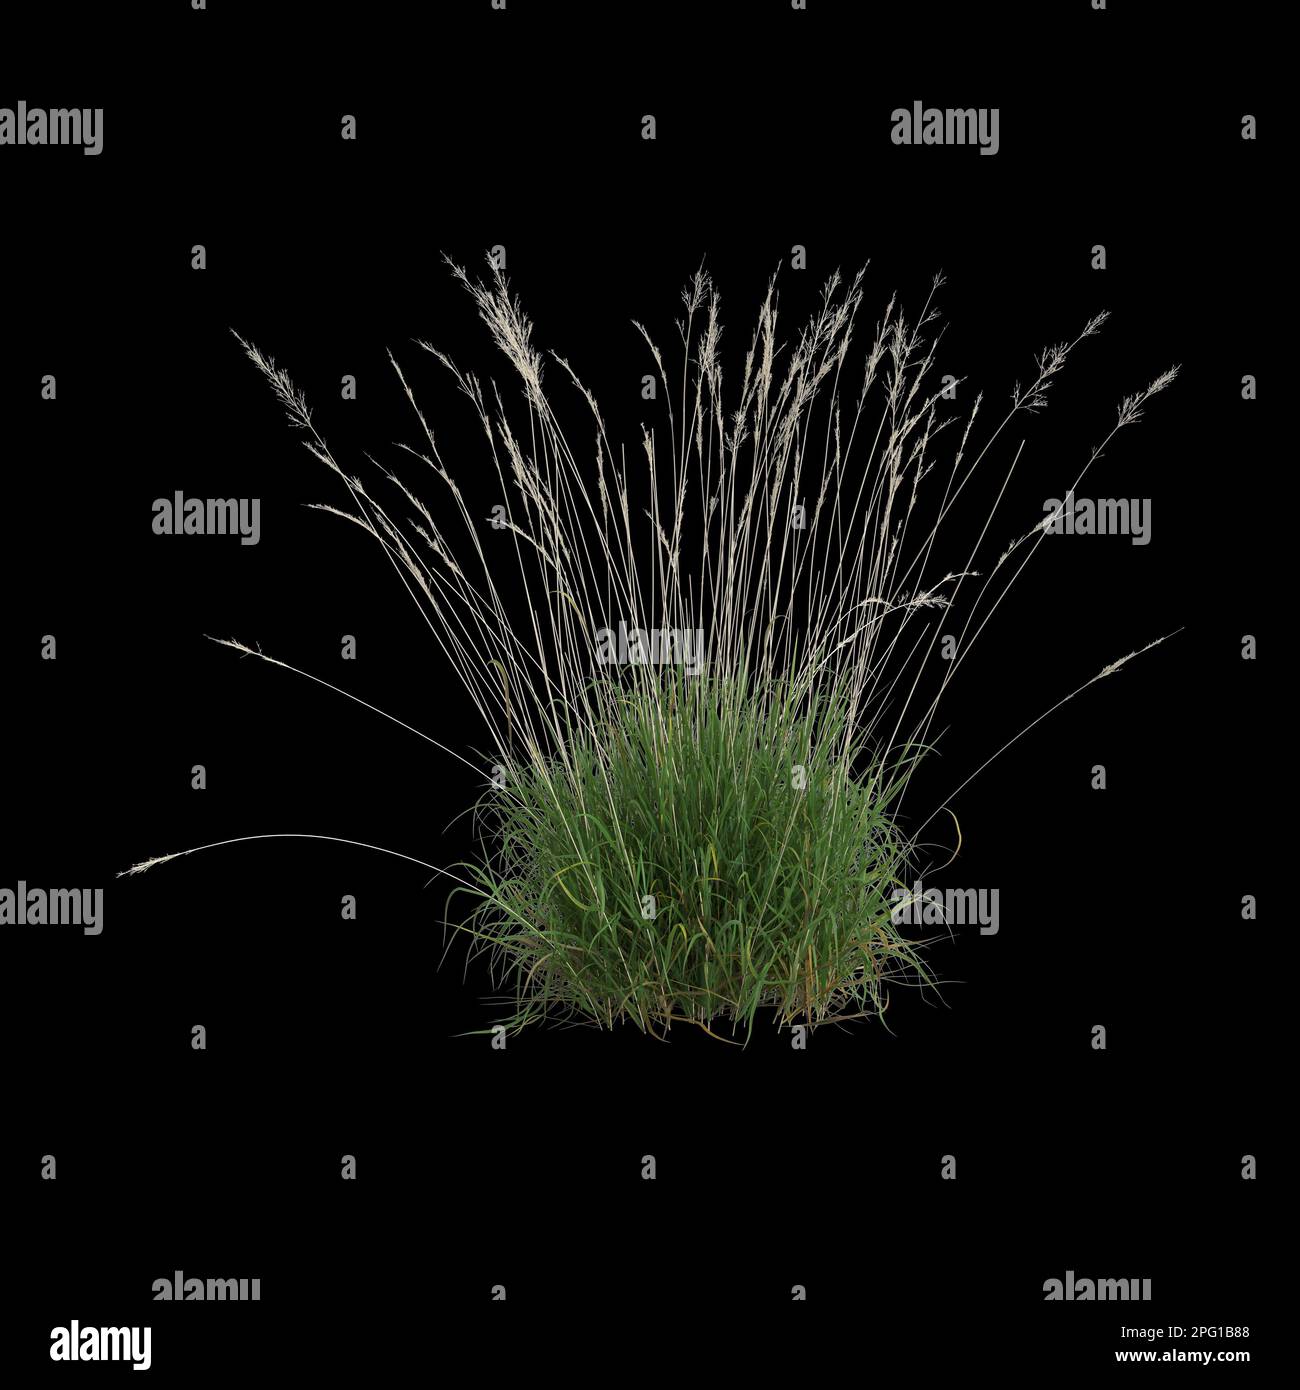 3d illustration of calamagrostis arundinacea bush isolated on black background Stock Photo